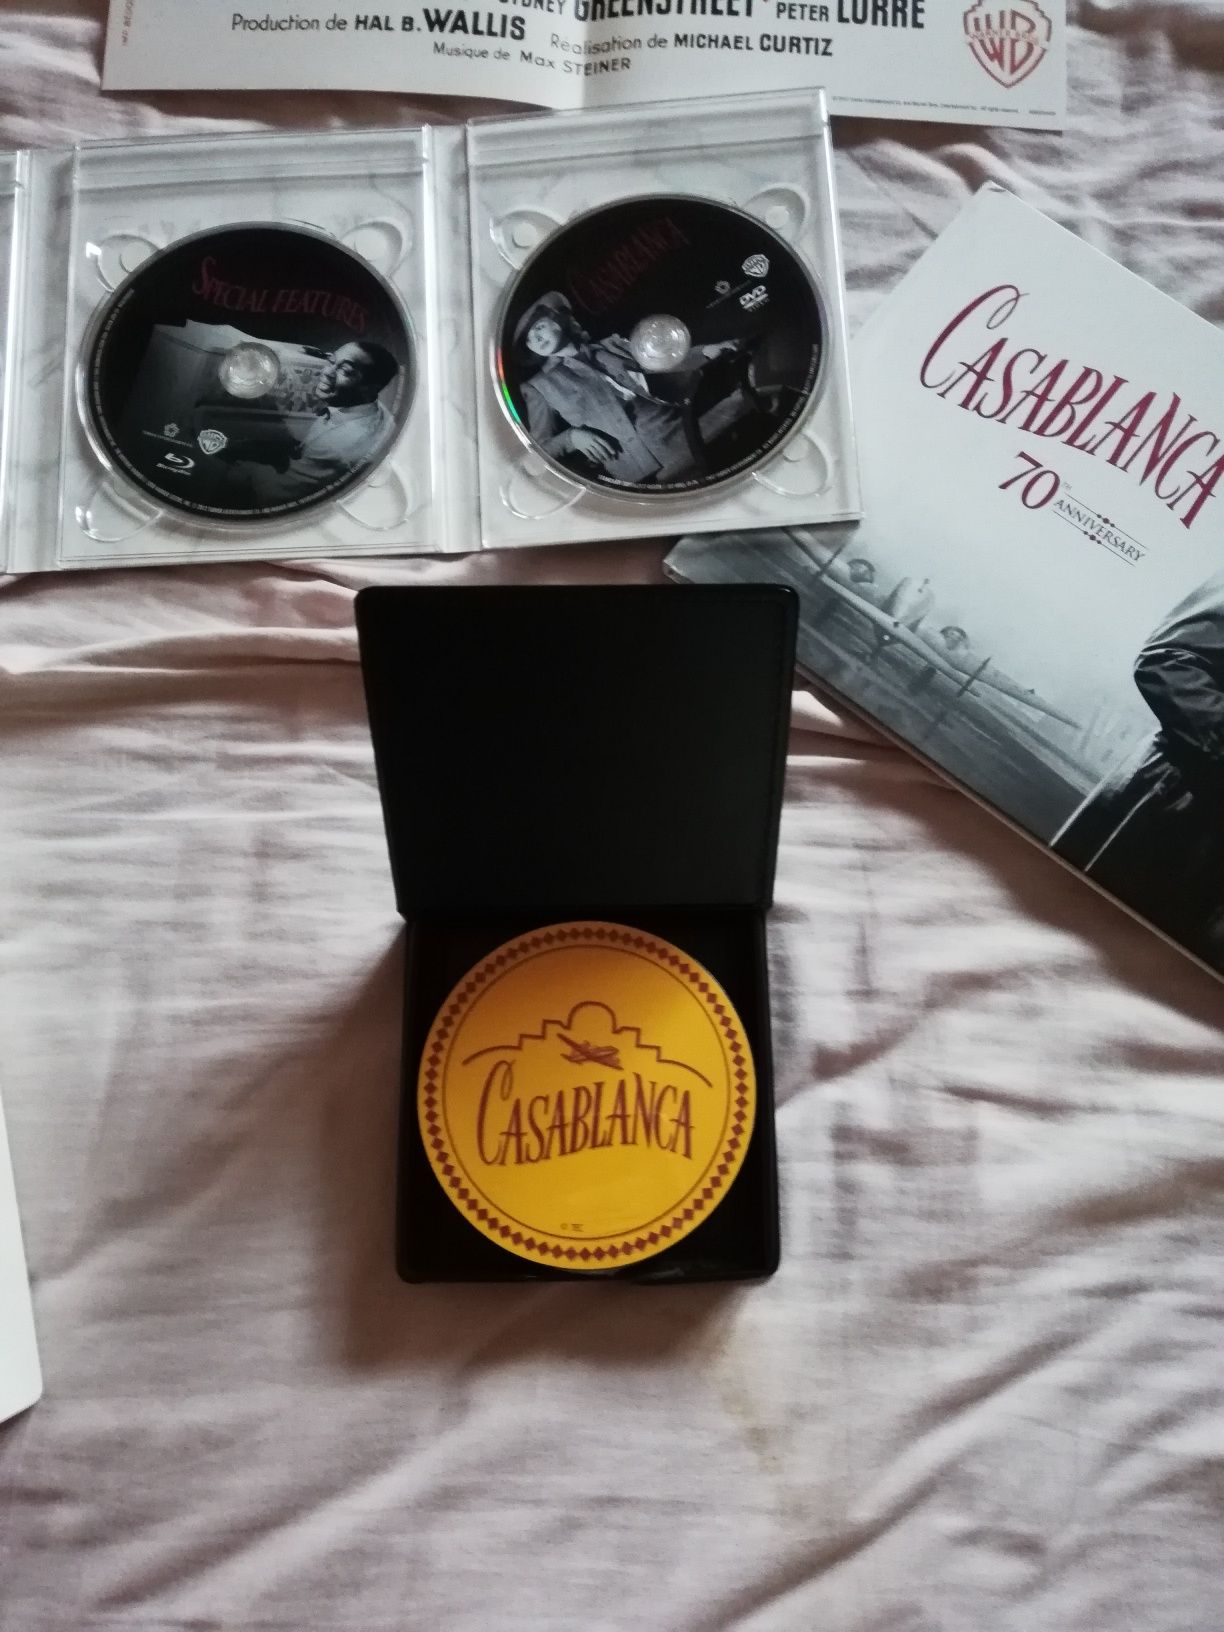 Edição limitada, Blu ray, do filme clássico "Casablanca" (portes gráti